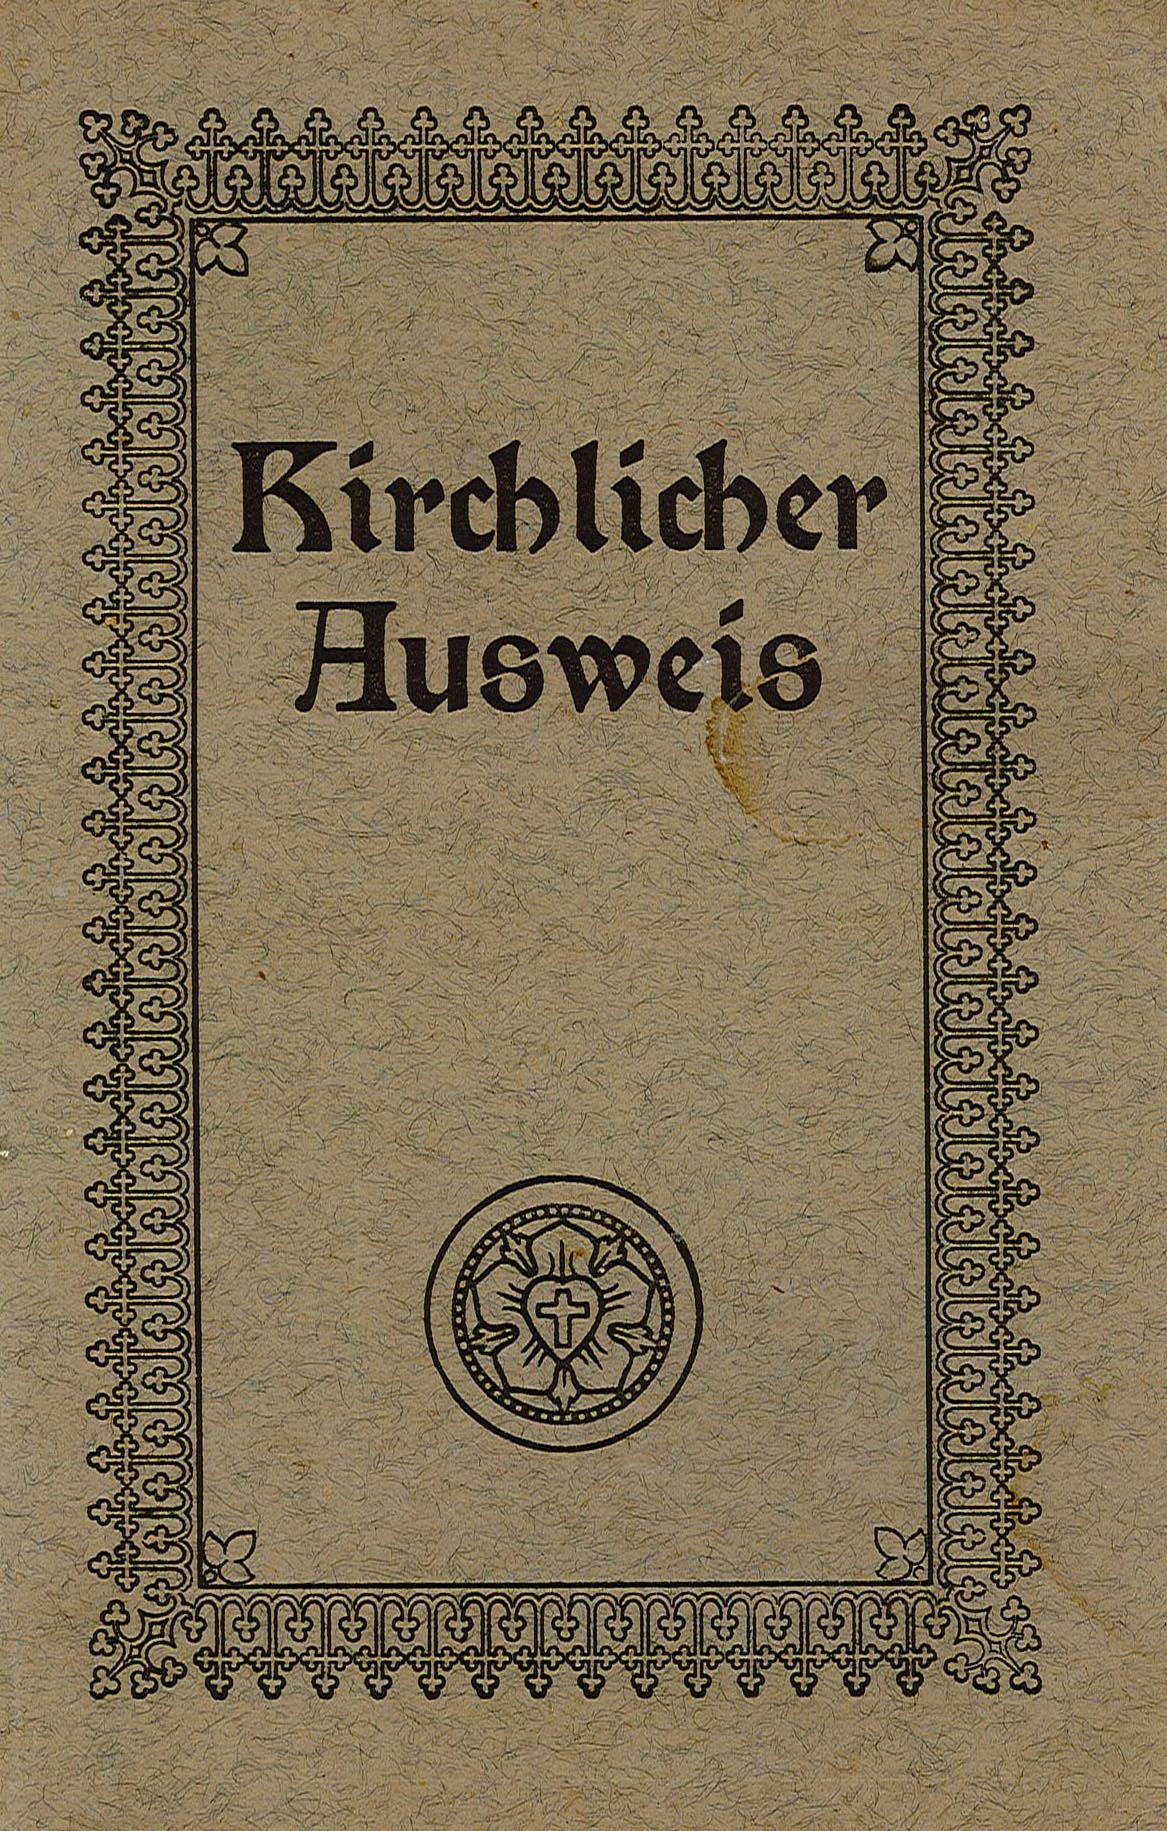 Kirchlicher Ausweis von Alma Prilloff (Museum Wolmirstedt RR-F)